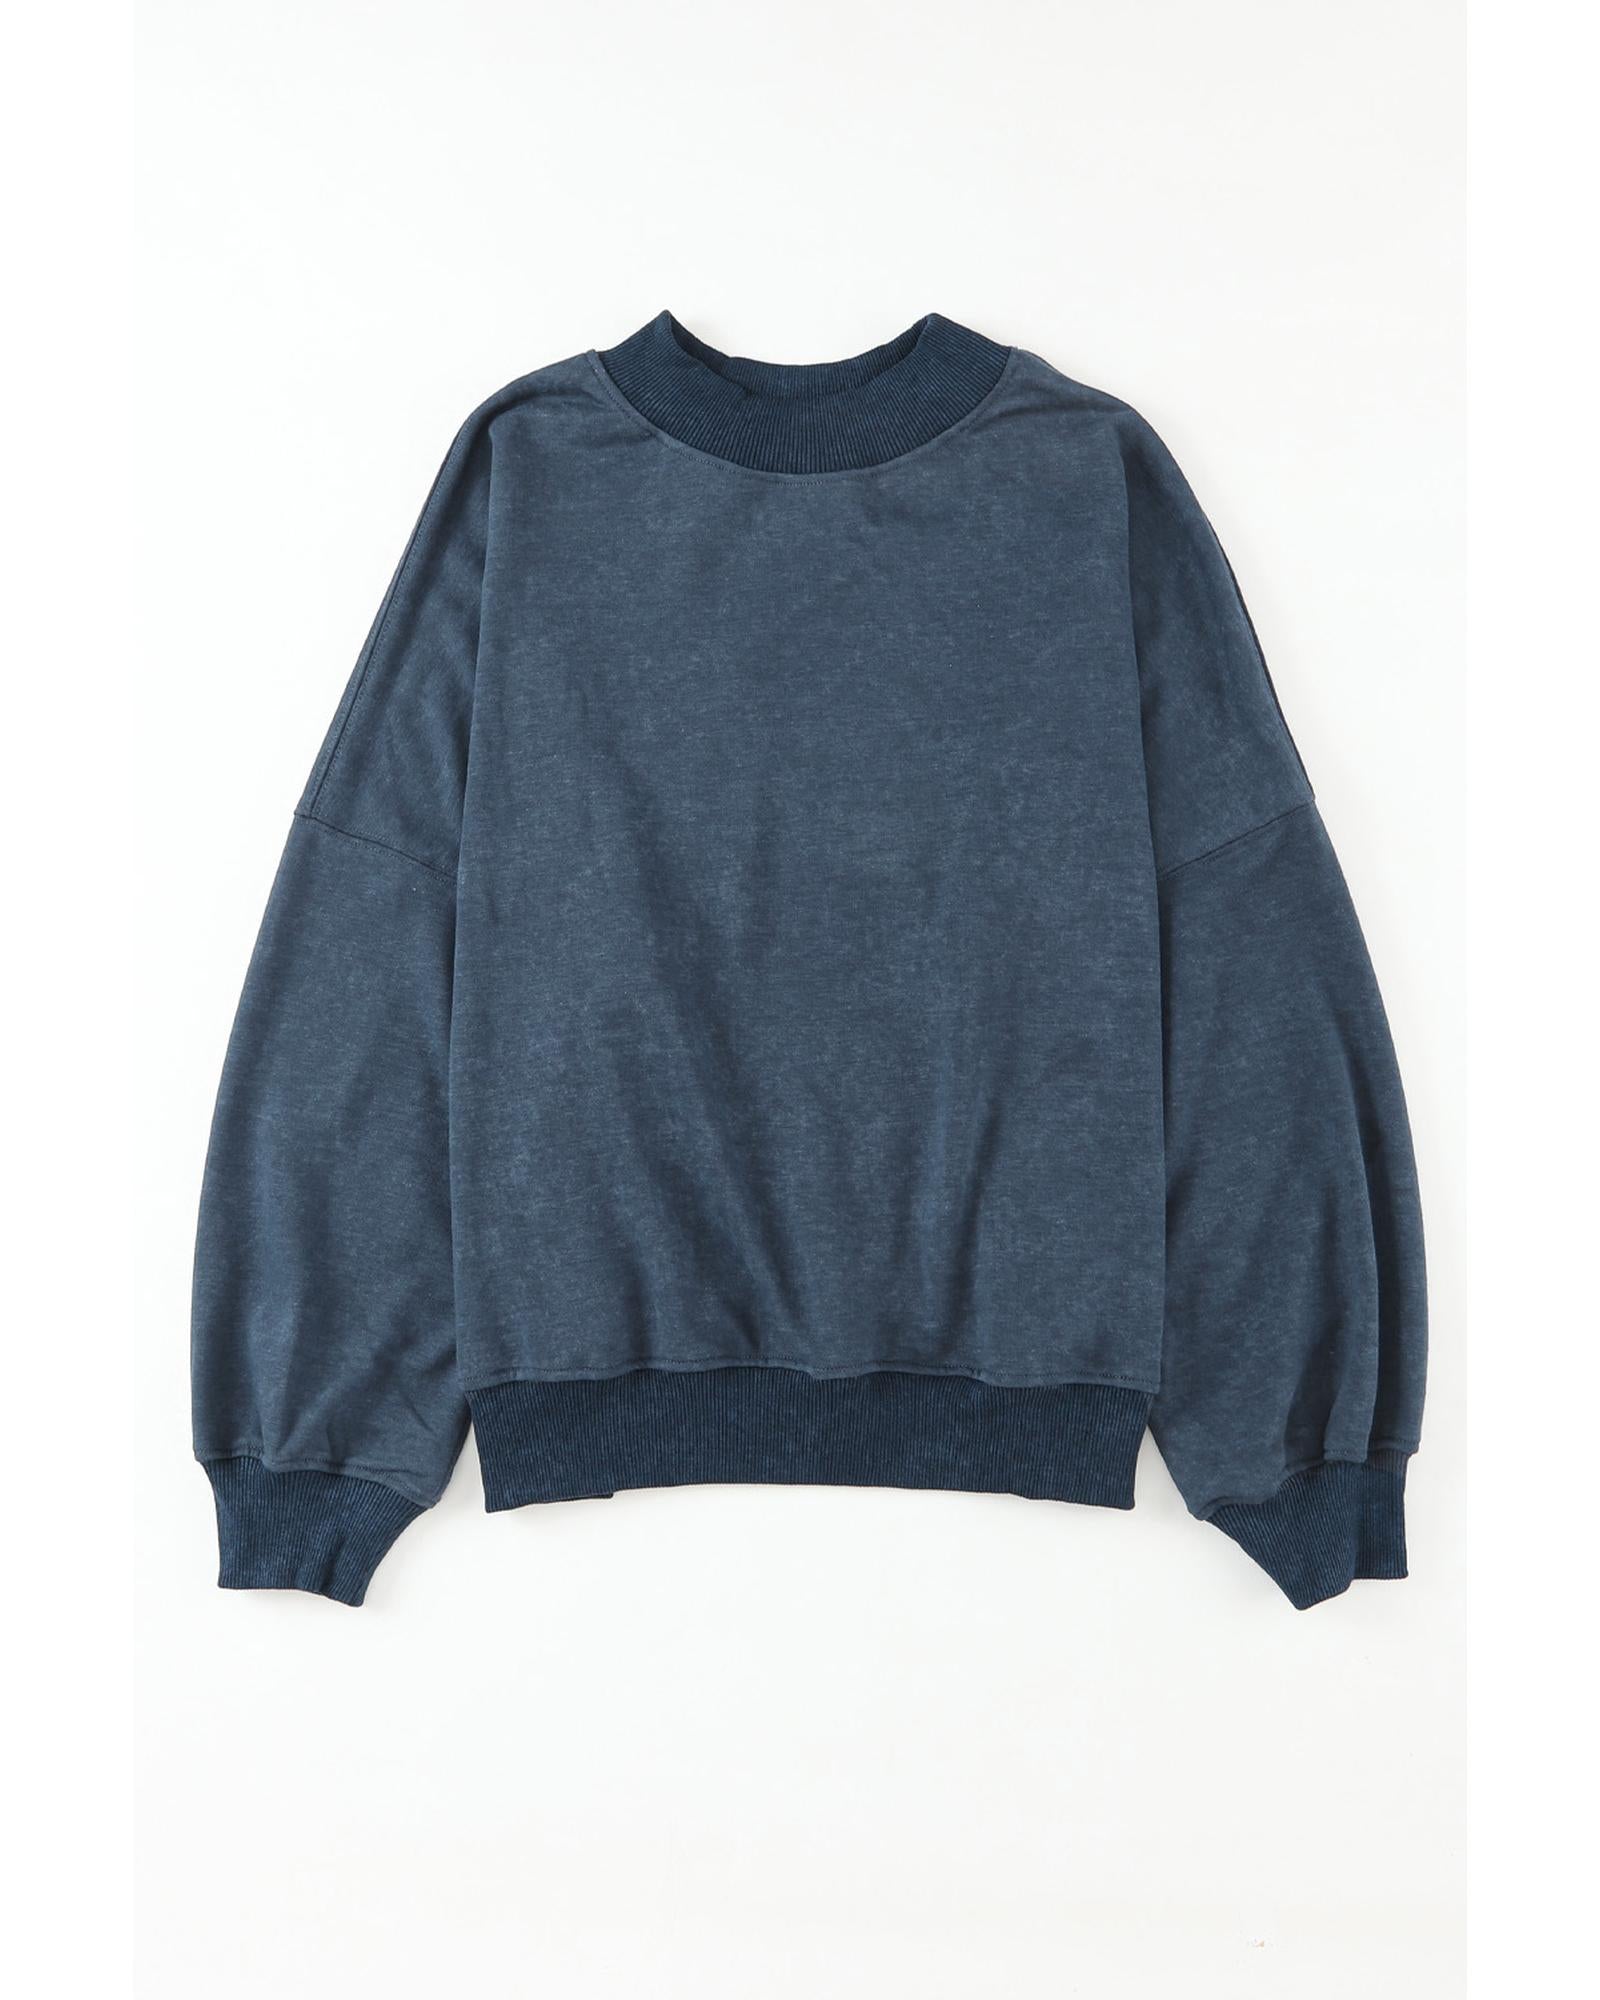 Azura Exchange Crew Neck Pullover Sweatshirt - S